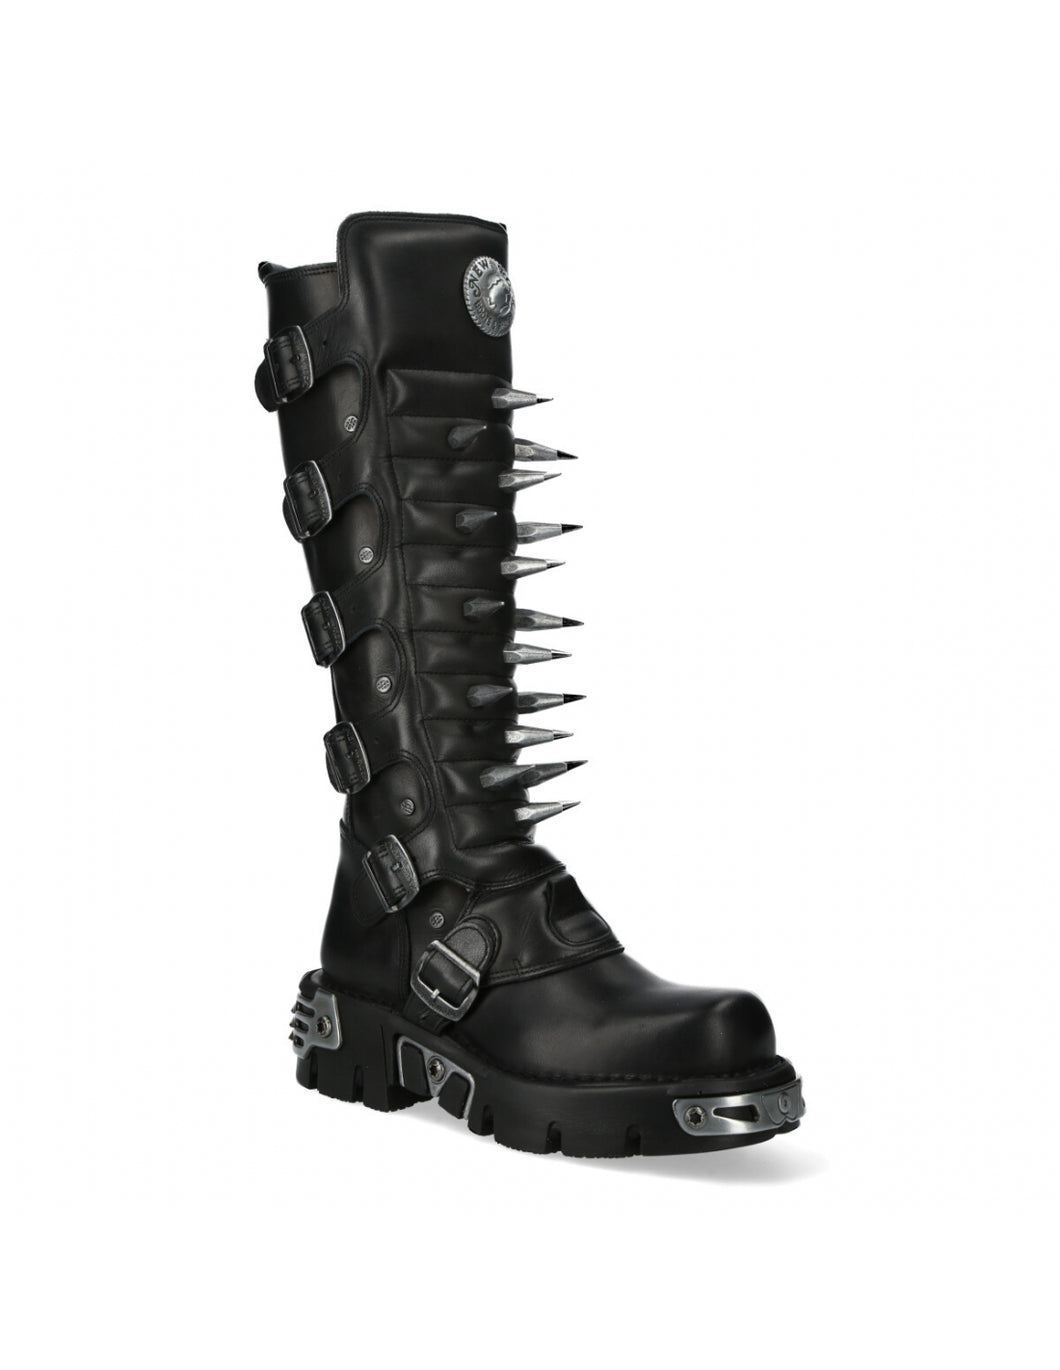 New Rock Schuhe Shoes Boots Stiefel M-718P-C2 Gothic Echtleder